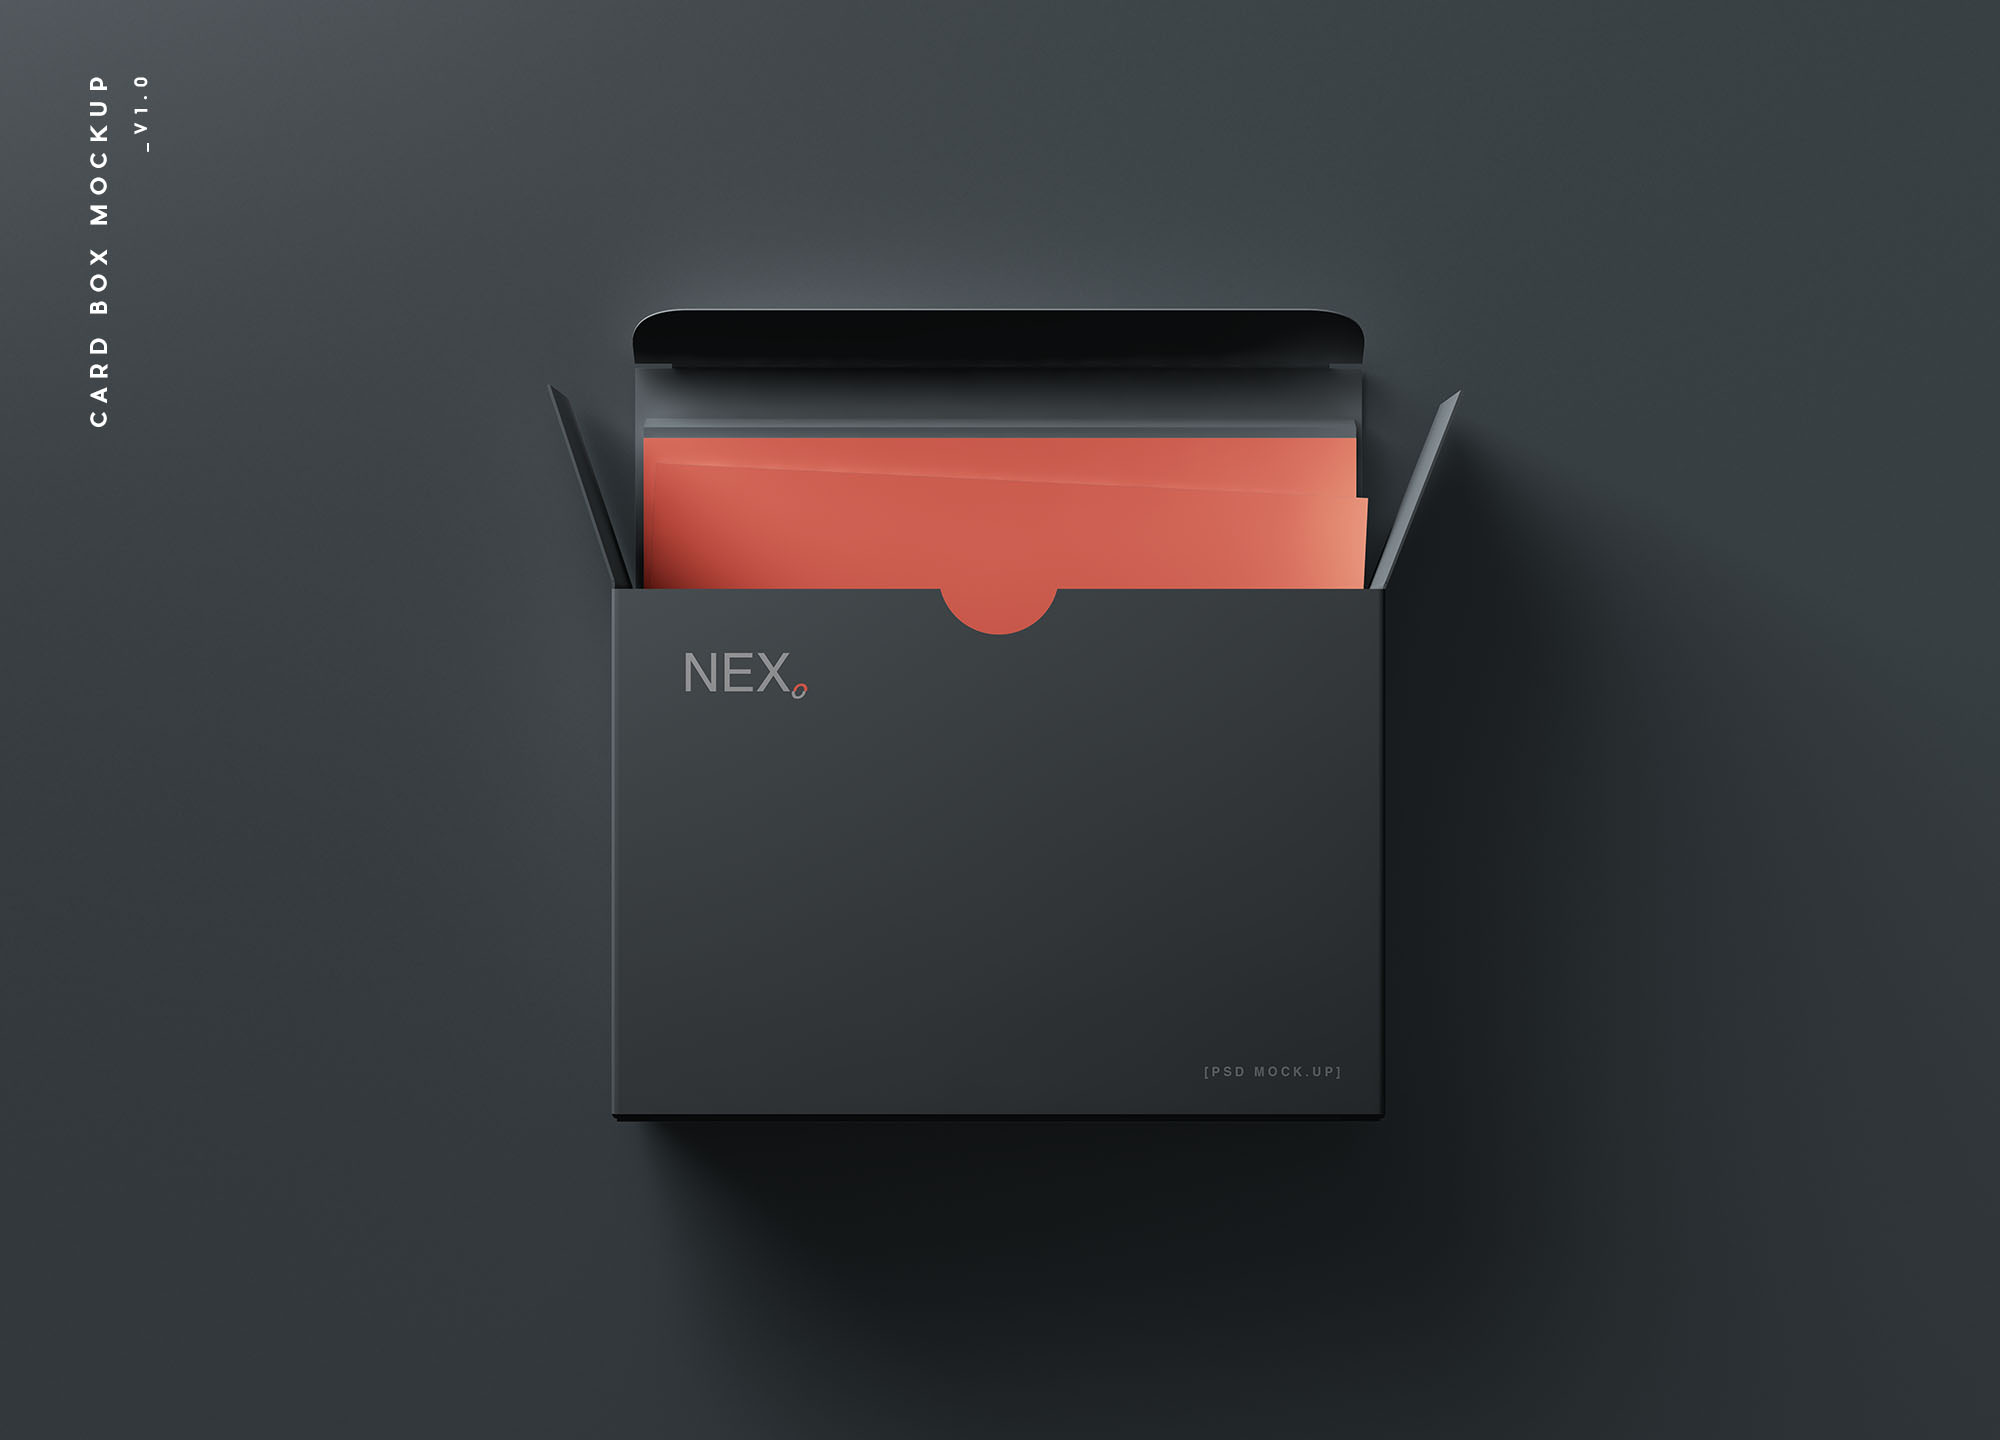 卡片包装盒外观设计效果图16图库精选 Card Box Mockup插图